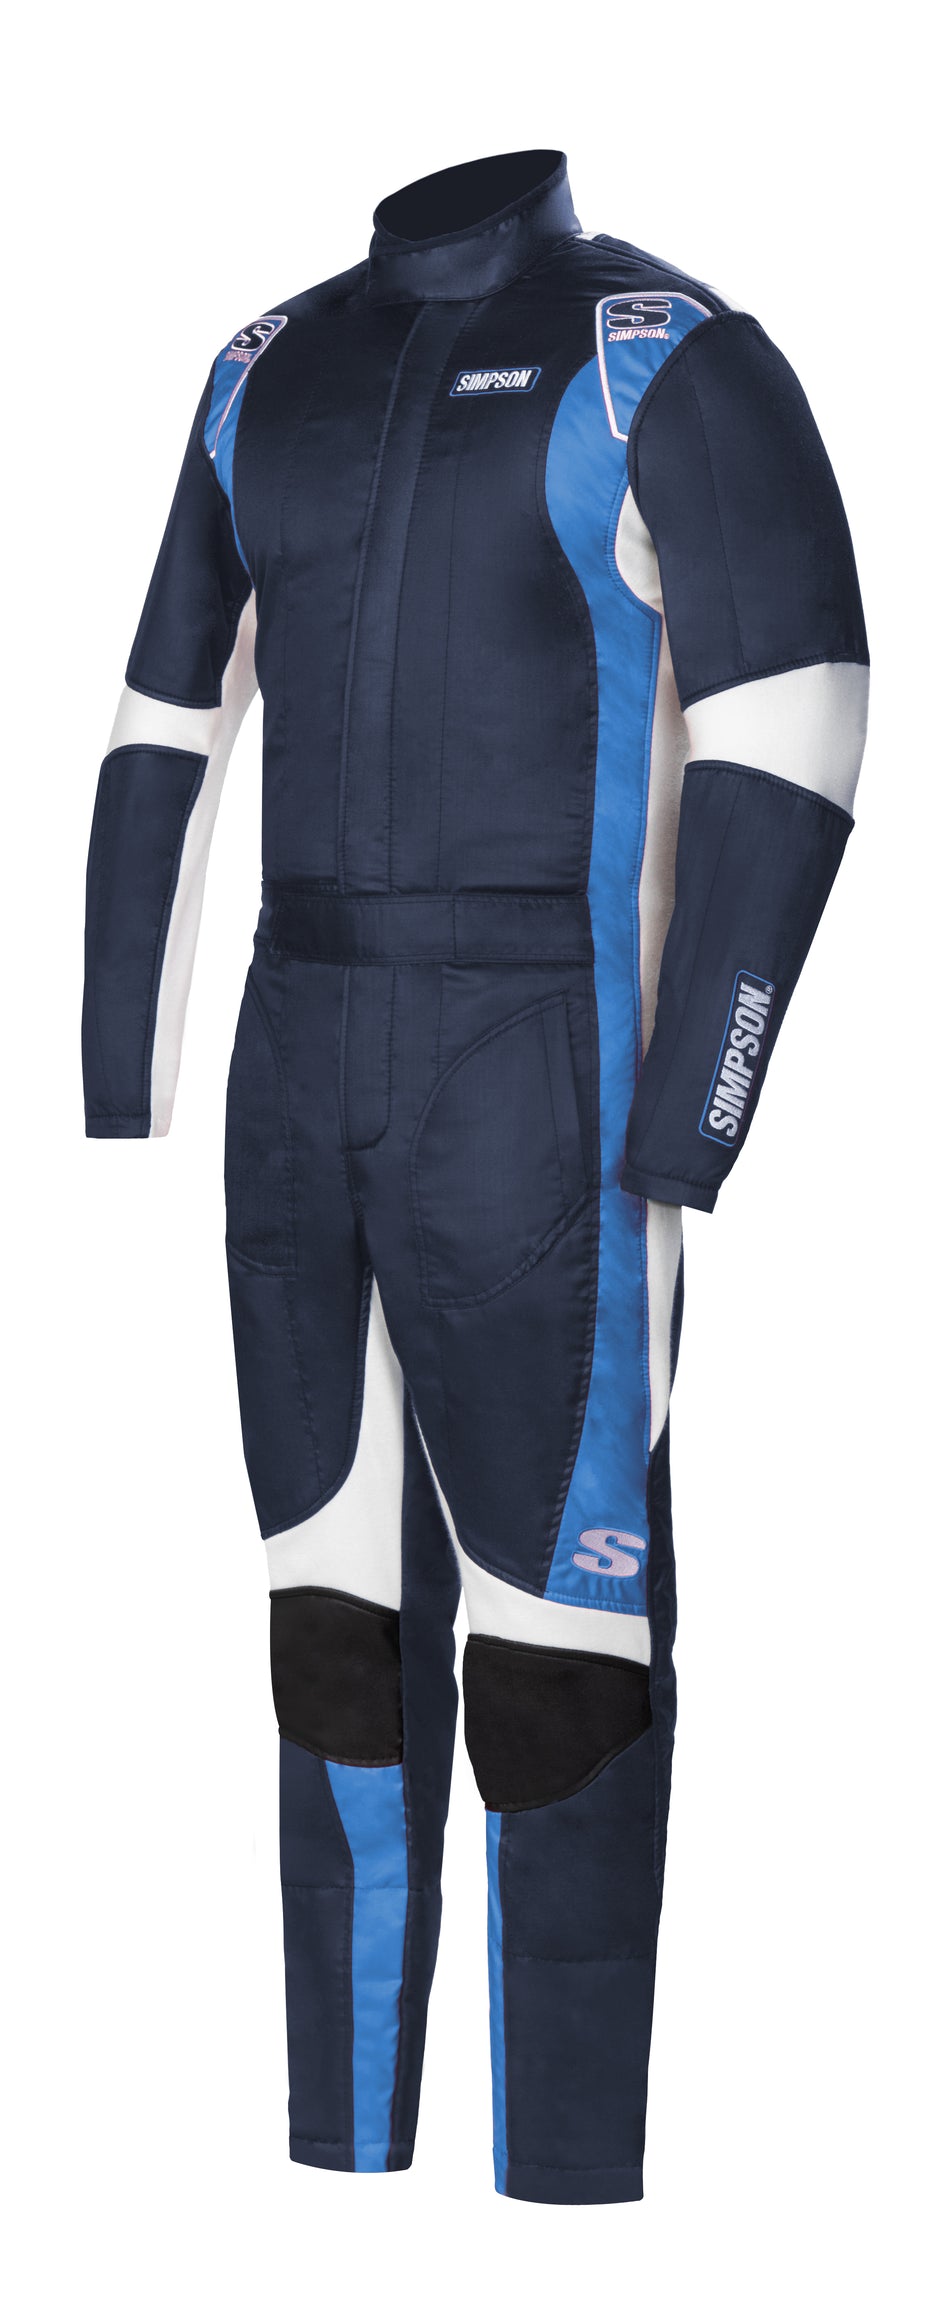 Simpson Supercoil Racing Suit - Navy/Bush Blue/White